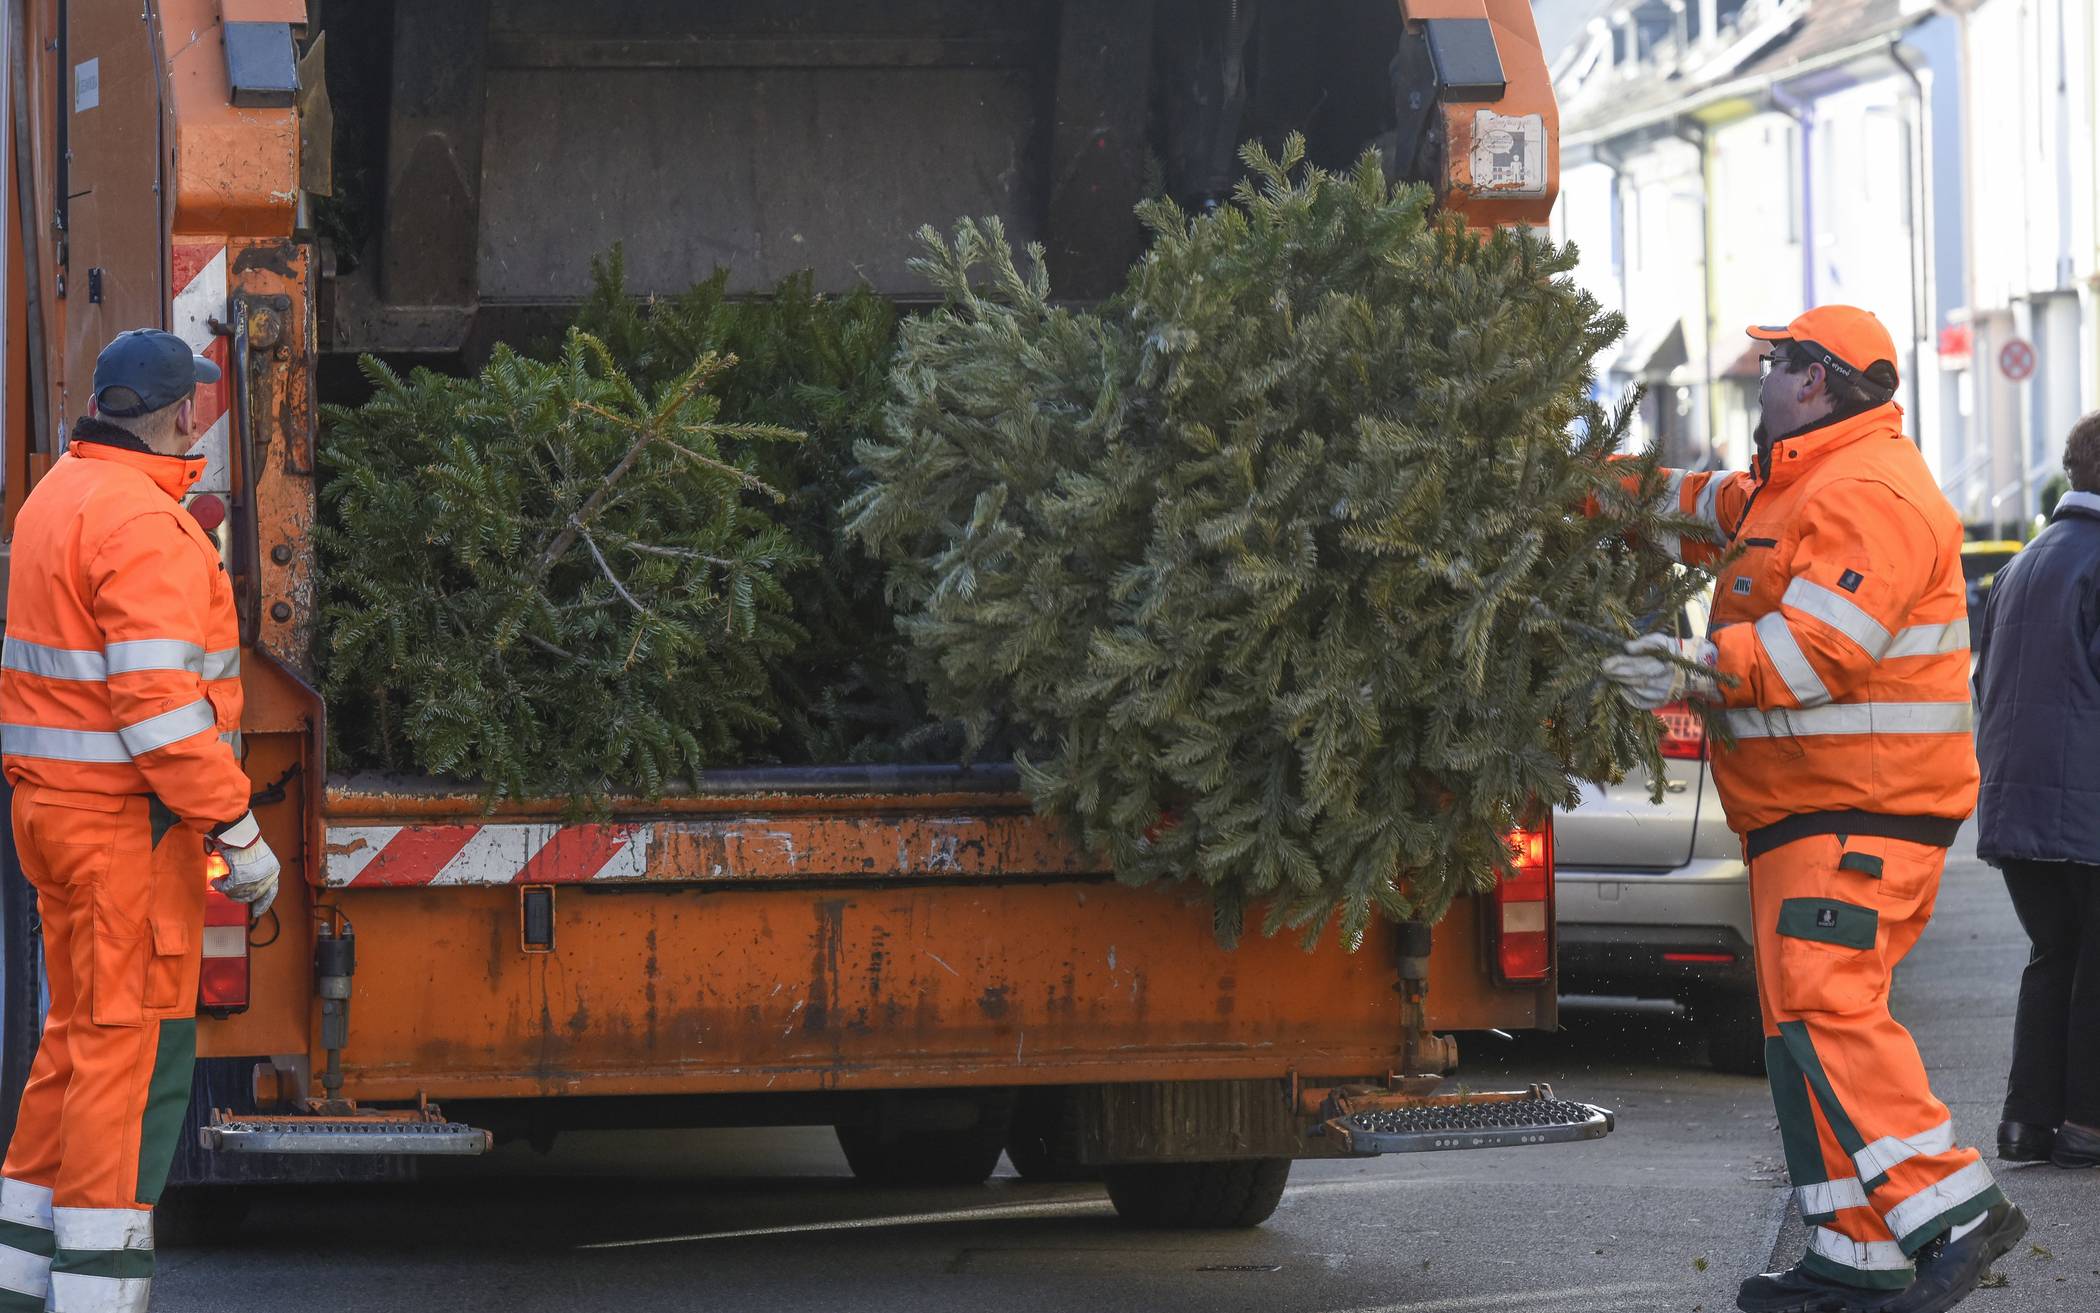  Die ausrangierten Weihnachtsbäume bringt die AWG zur Kompostierungsanlage der Gesellschaft für Kompostierung und Recycling (GKR) im benachbarten Velbert. 